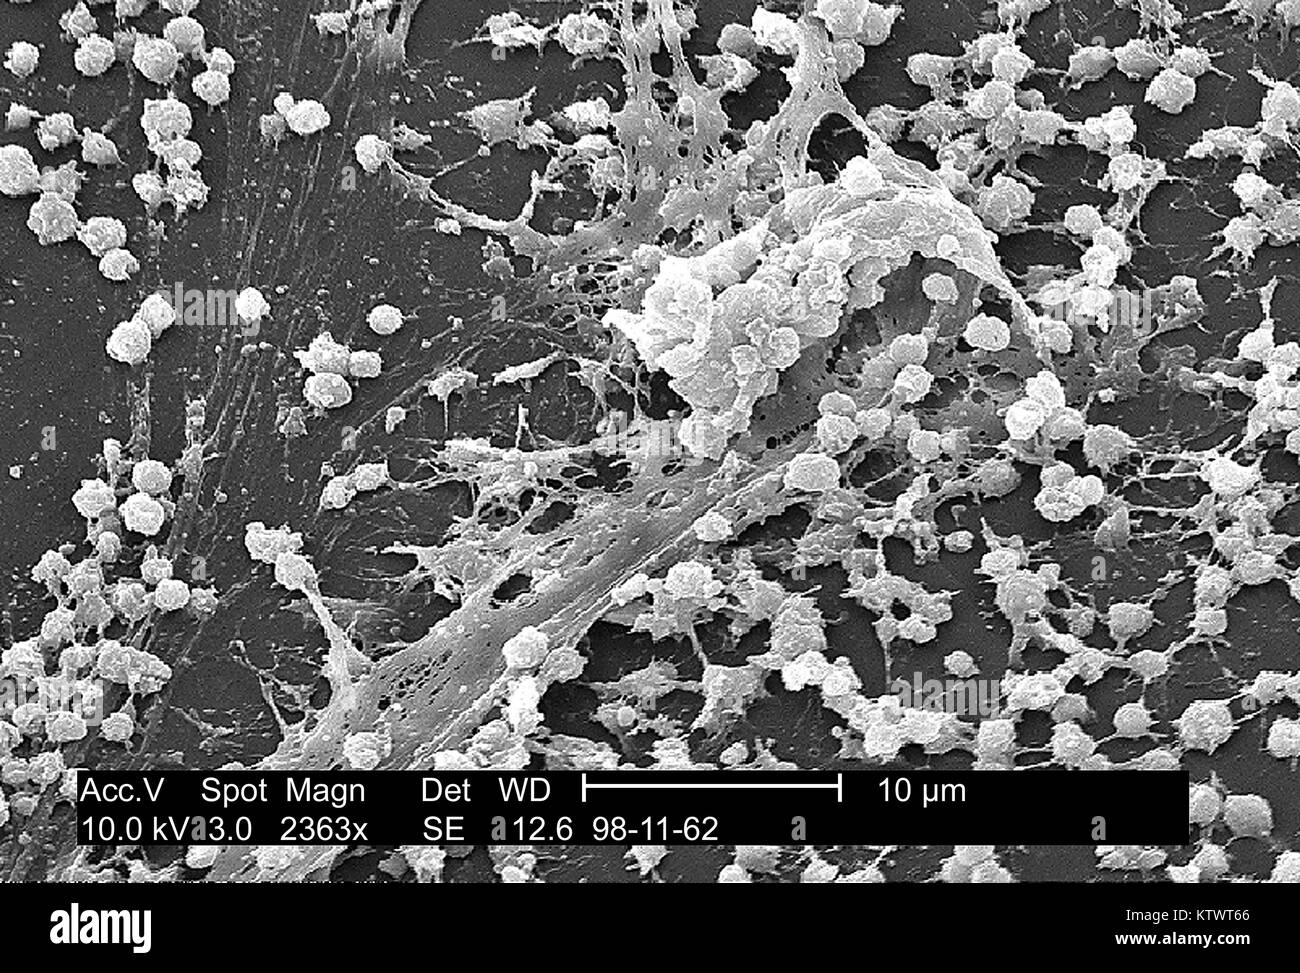 Análisis micrografía de electrones (SEM) de un Staphylococcus biofilm en la superficie interior de un conector needleless. Una característica distintiva de las biopelículas es la presencia de sustancias poliméricas extracelulares, principalmente polisacáridos, rodeando y encajonan las celdas. Aquí, estos polisacáridos han sido visualizada por microscopía electrónica de barrido. Imagen cortesía de CDC/Dr. Rodney M. Donlan, 2002. Foto de stock